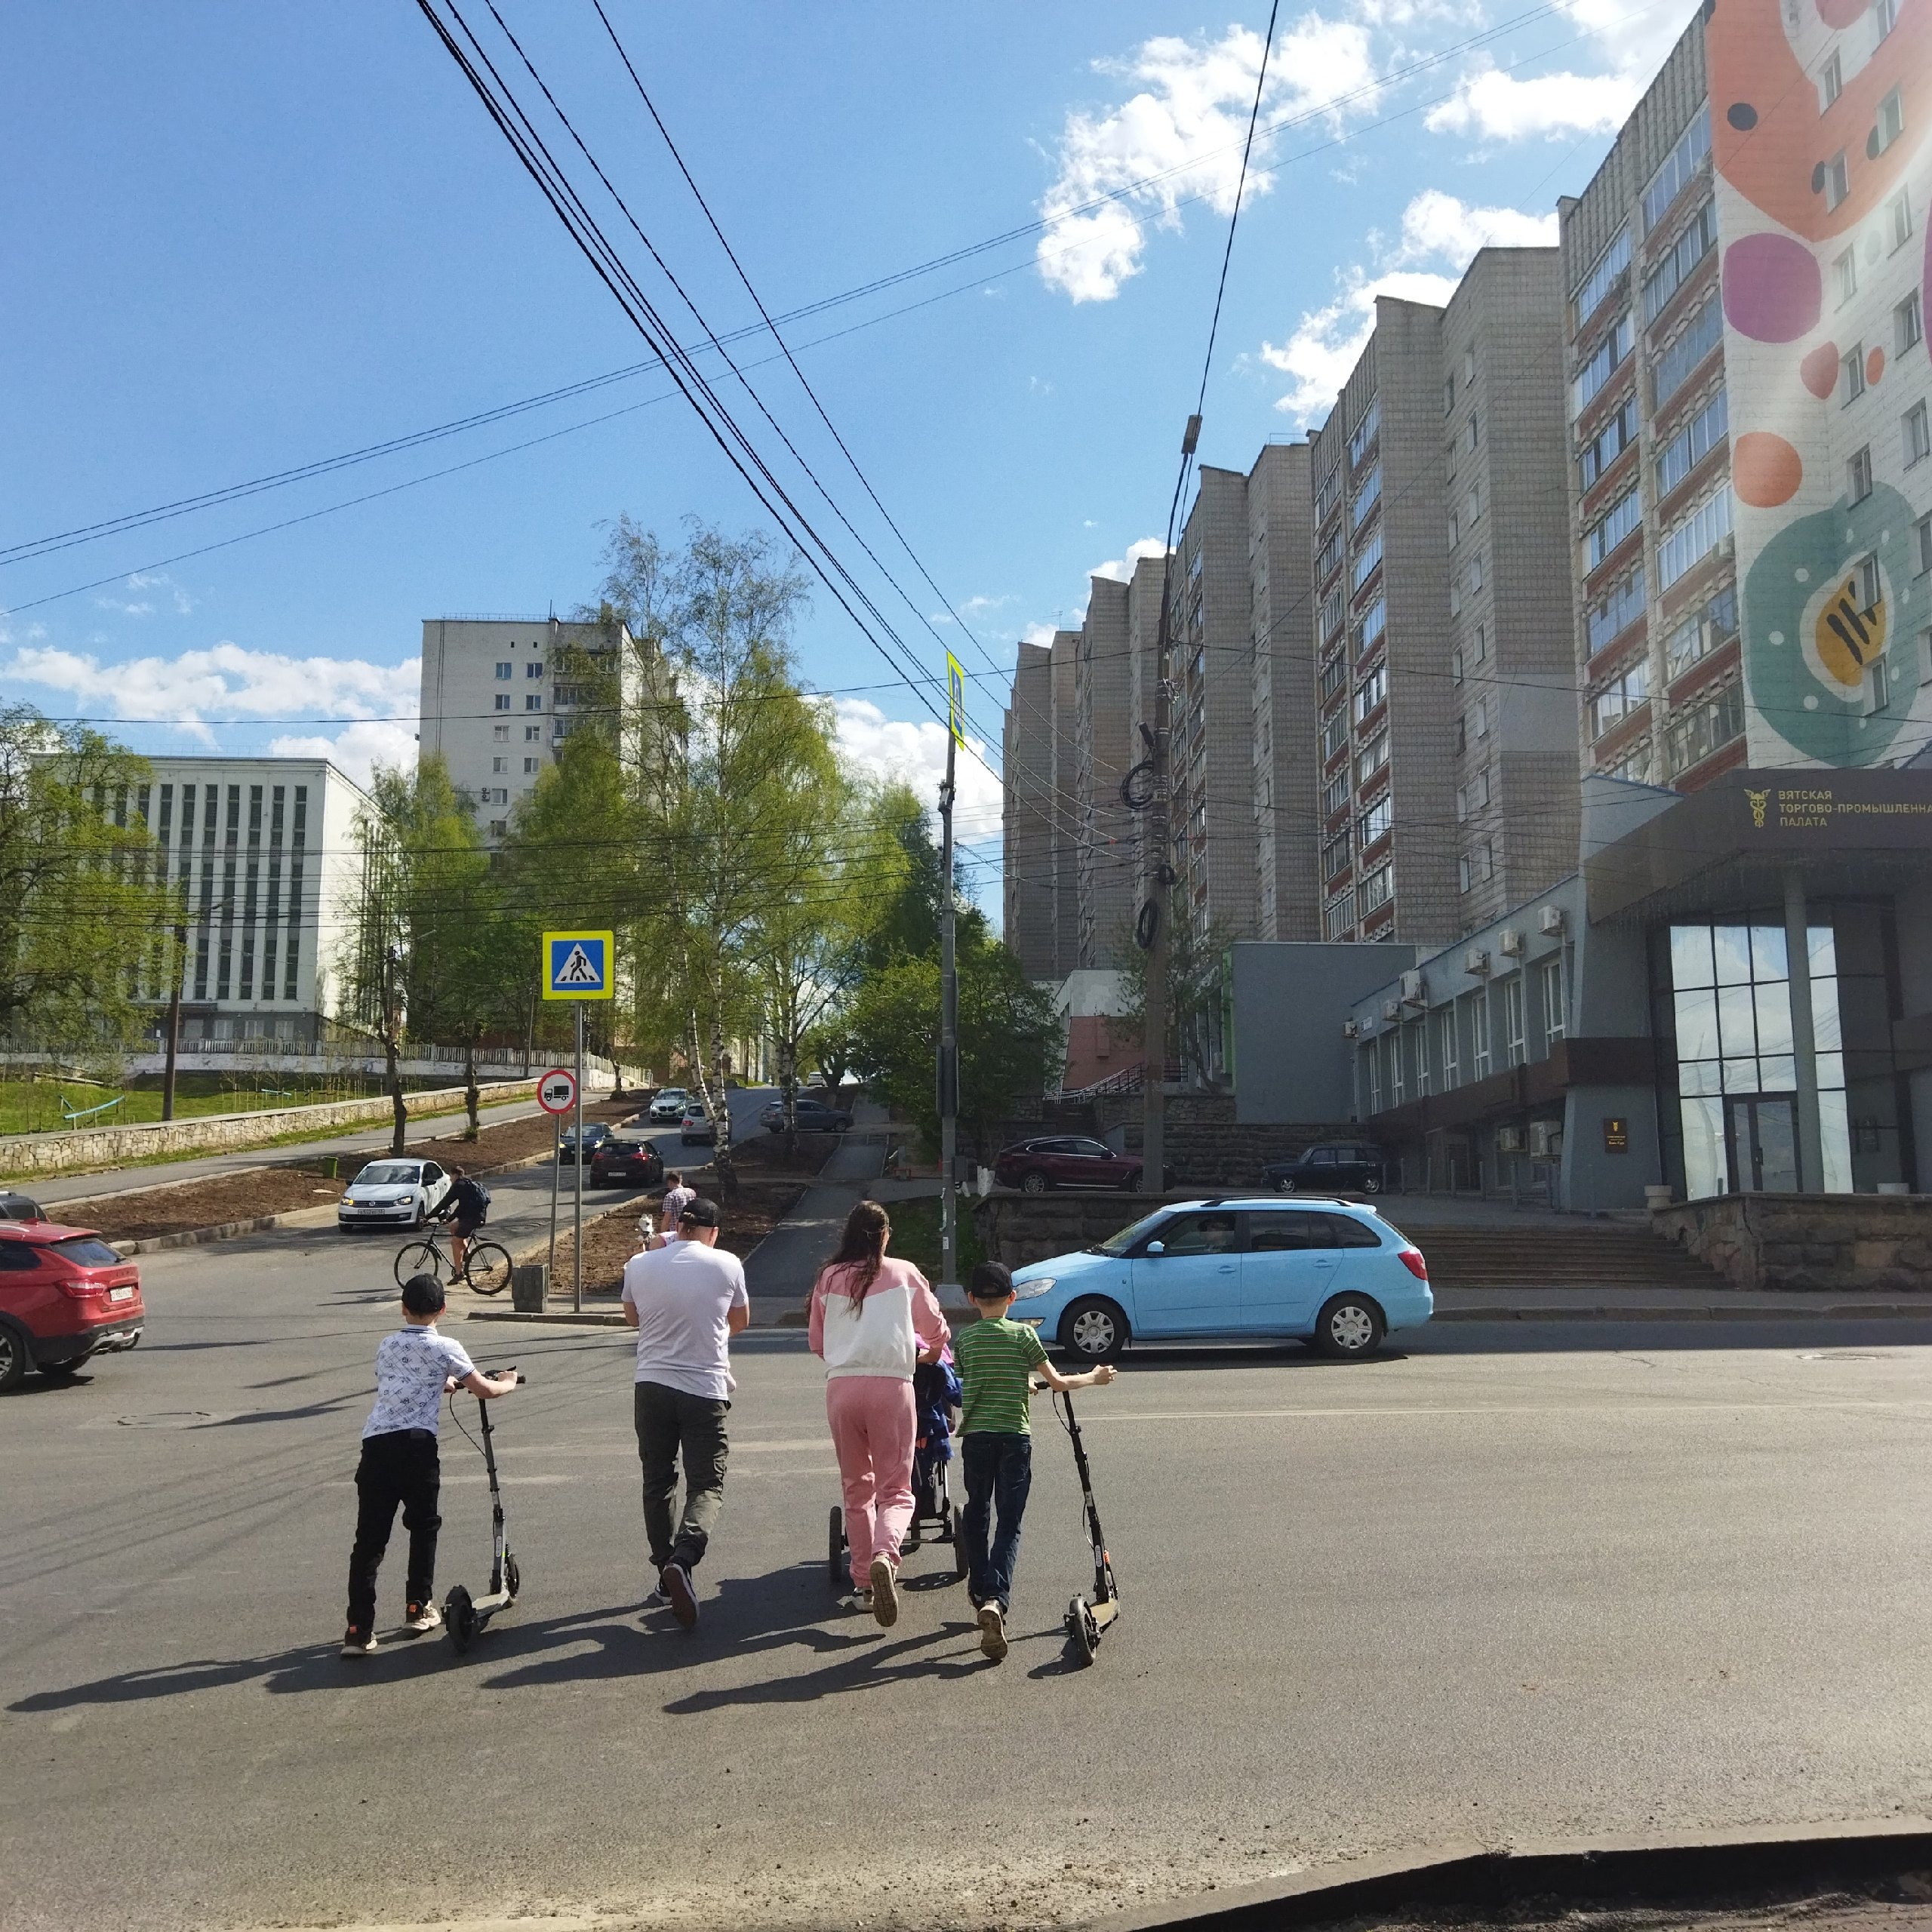 Метеорологи обещают теплый июнь в Кирове